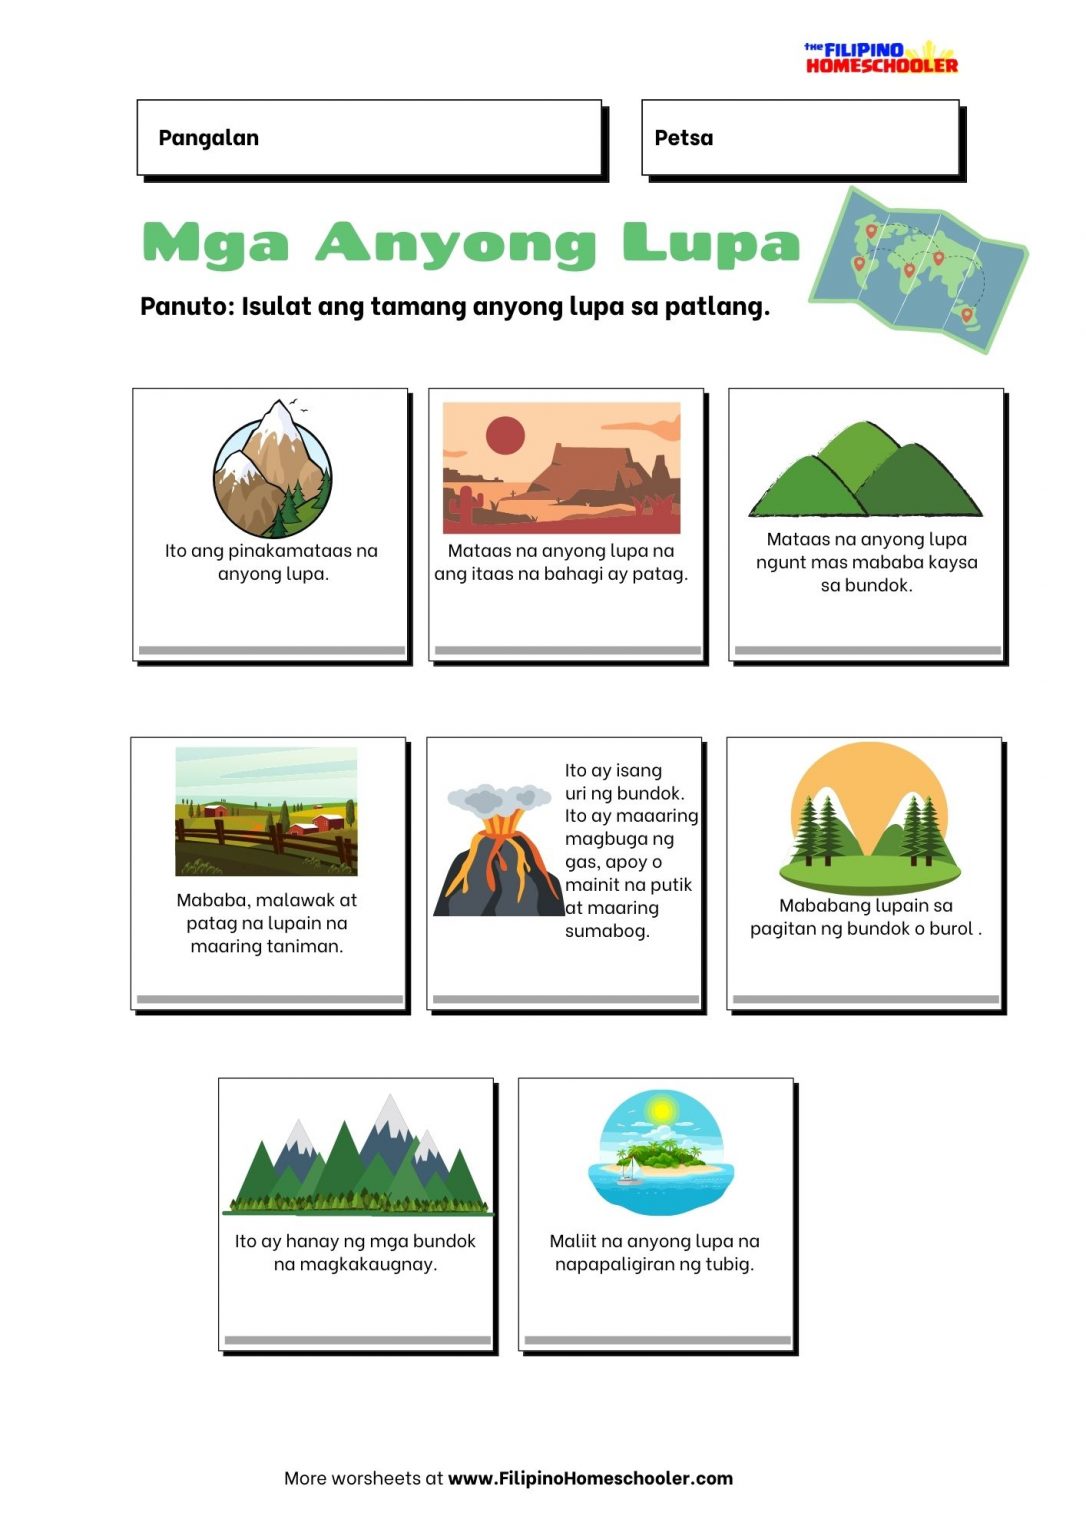 Anyong Lupa at mga Halimbawa — The Filipino Homeschooler